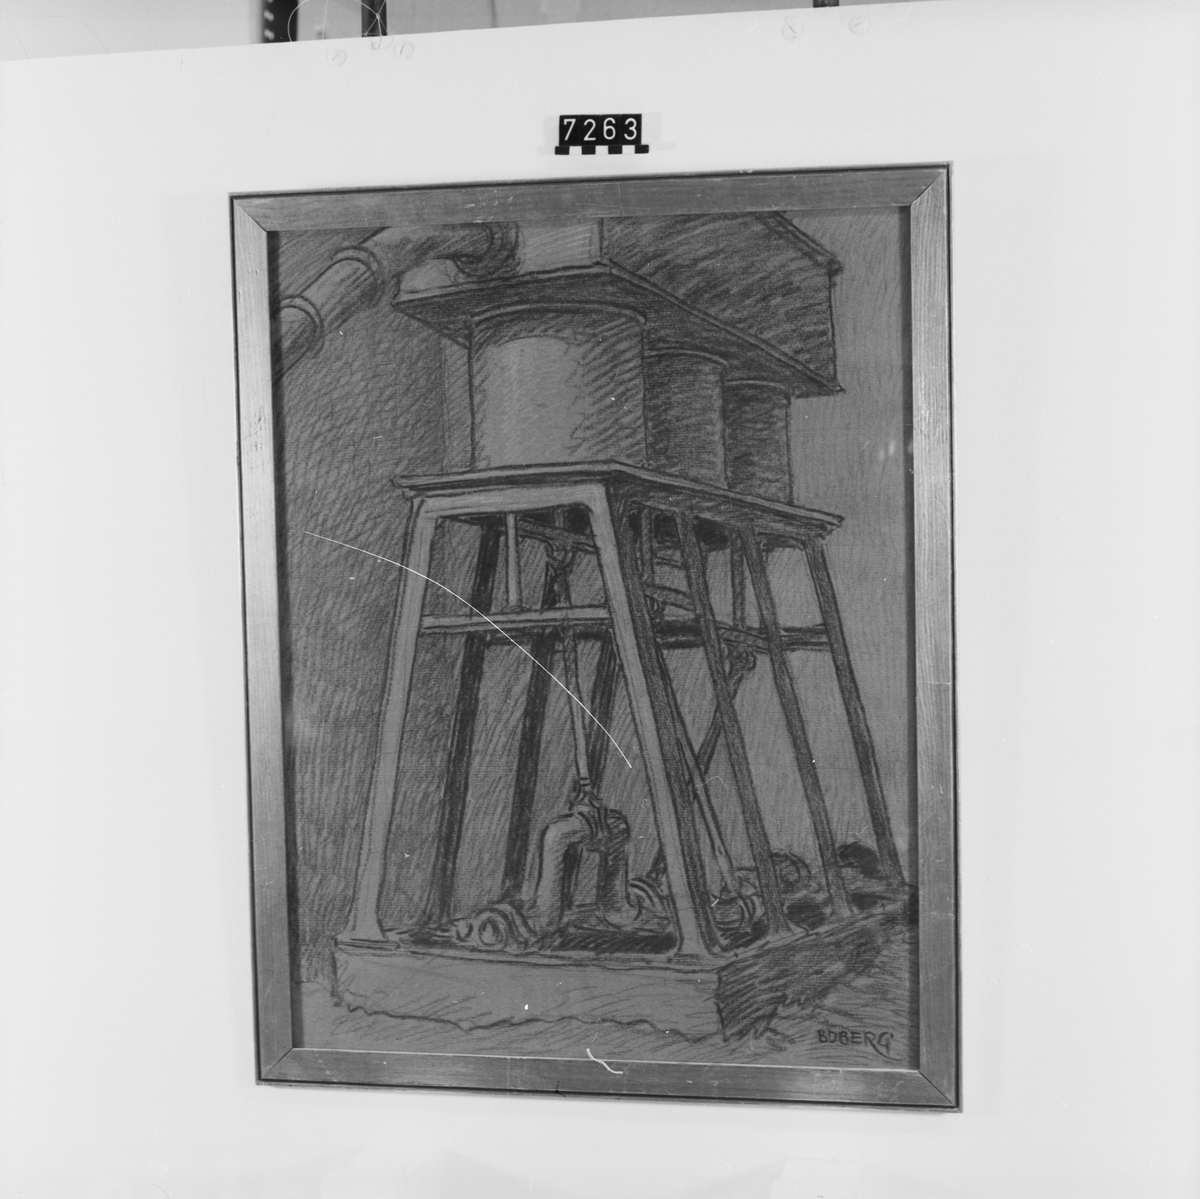 Signerad: "Boberg". På tavlans baksida: "Cylinderblåsverk i smedjan vid Algrena (Närke) 1919. "Ferdinand Boberg". I glas och förgylld ram.